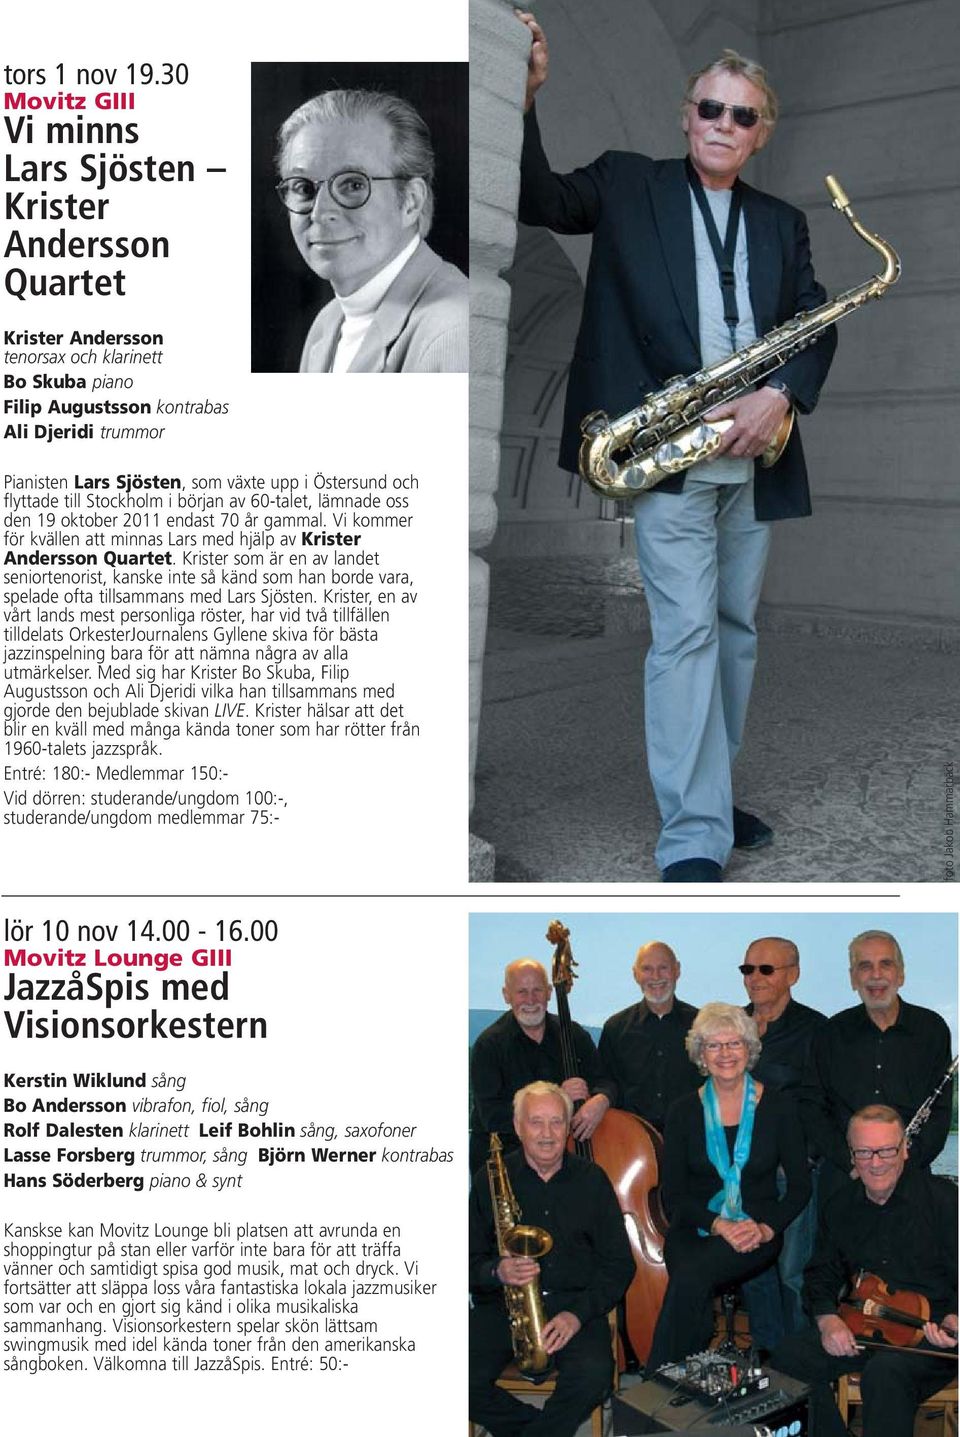 Östersund och flyttade till Stockholm i början av 60-talet, lämnade oss den 19 oktober 2011 endast 70 år gammal. Vi kommer för kvällen att minnas Lars med hjälp av Krister Andersson Quartet.